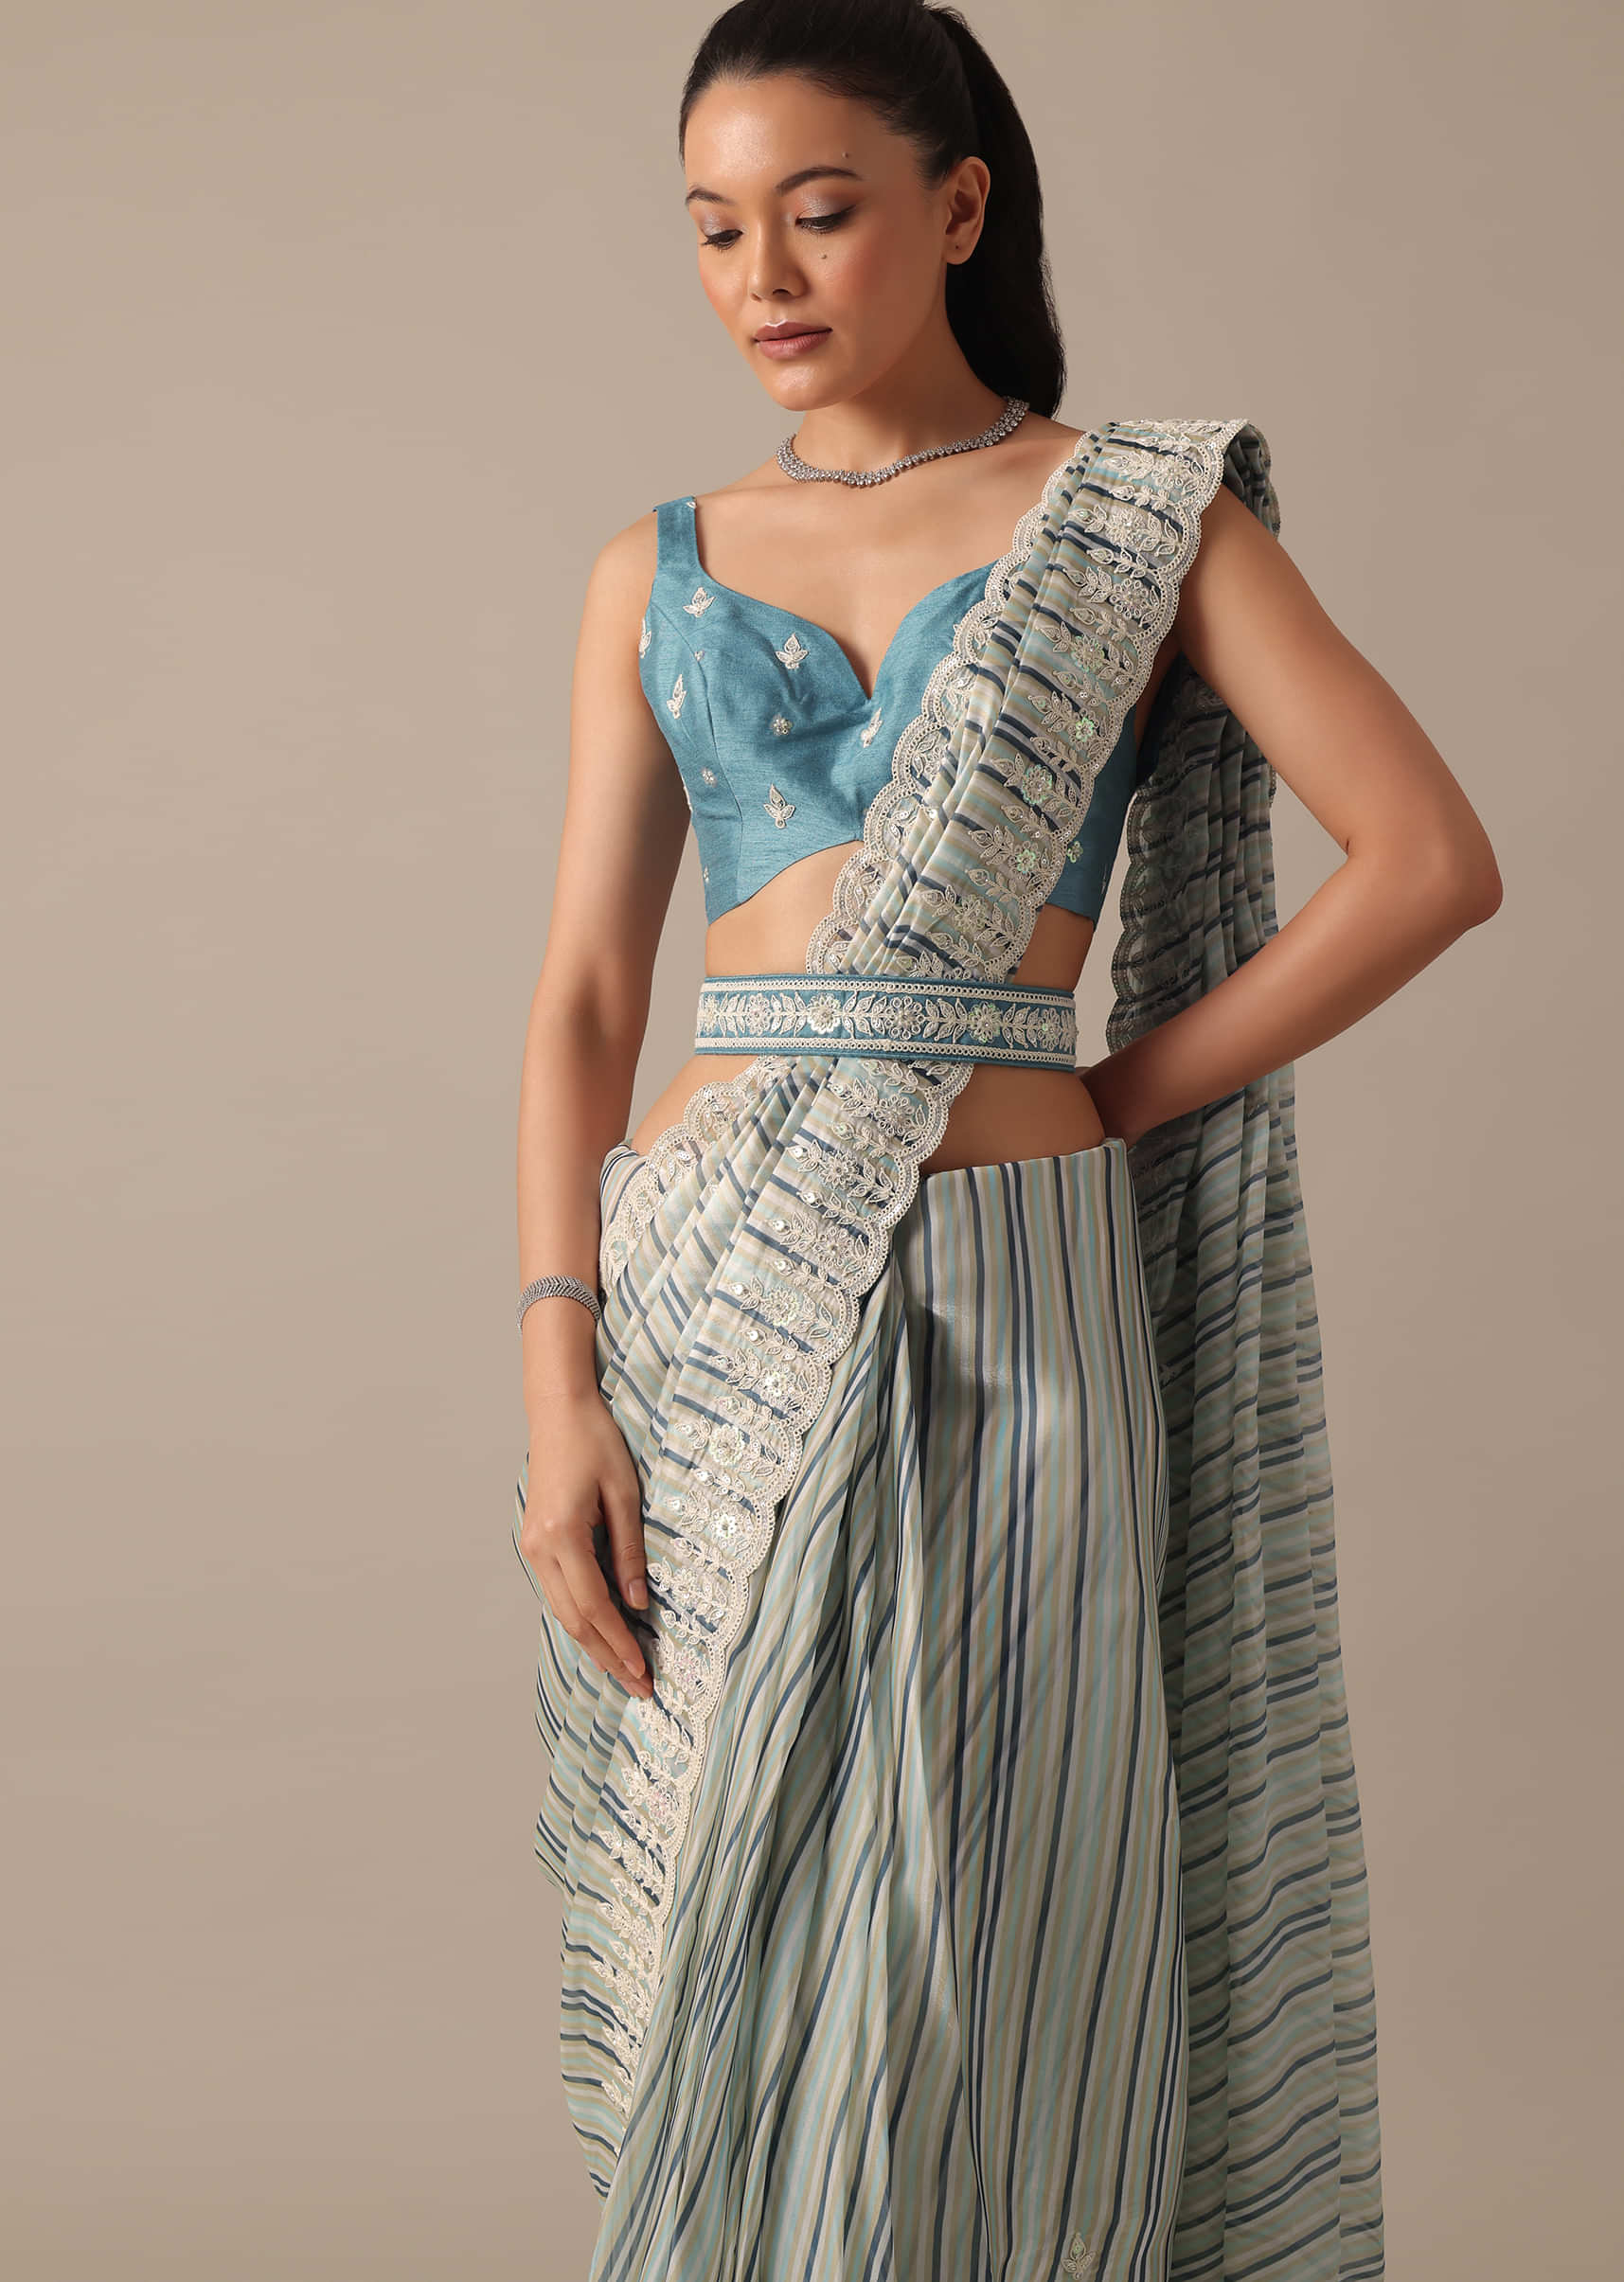 20 Saree belt design ideas  saree with belt, bridal blouse